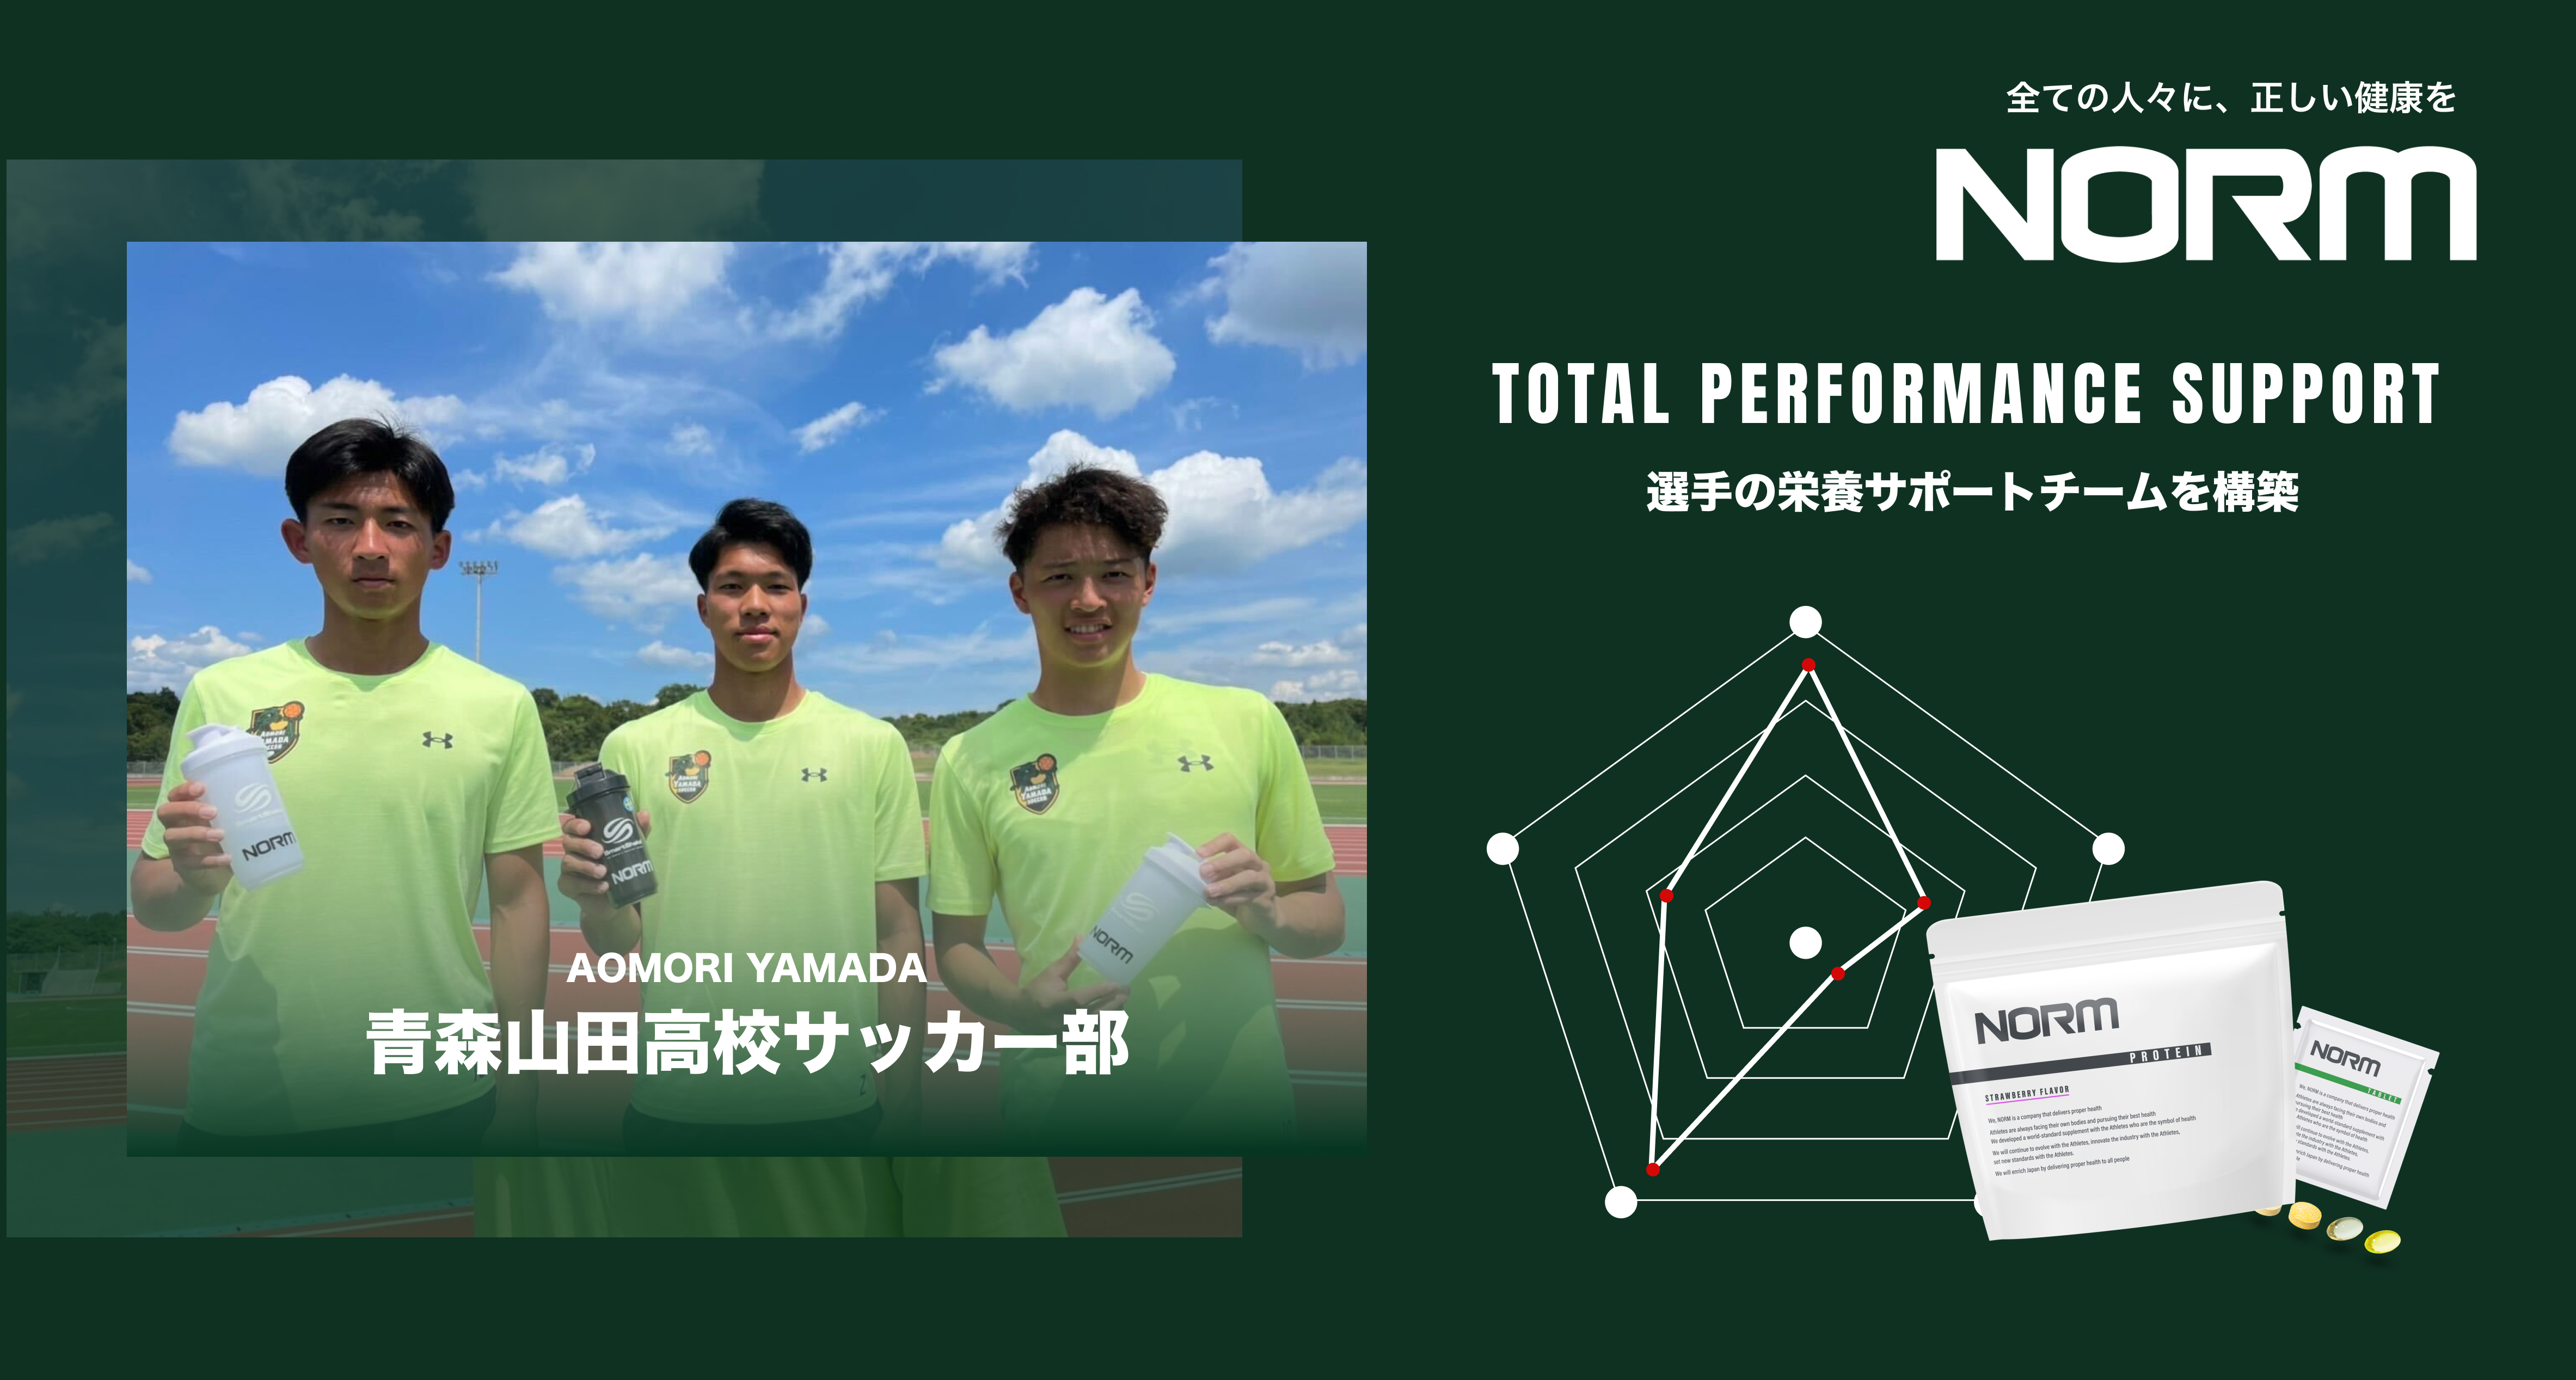 青森山田高校サッカー部 ヘルステック企業 Norm と 選手の栄養サポート体制を構築 ノーム株式会社のプレスリリース